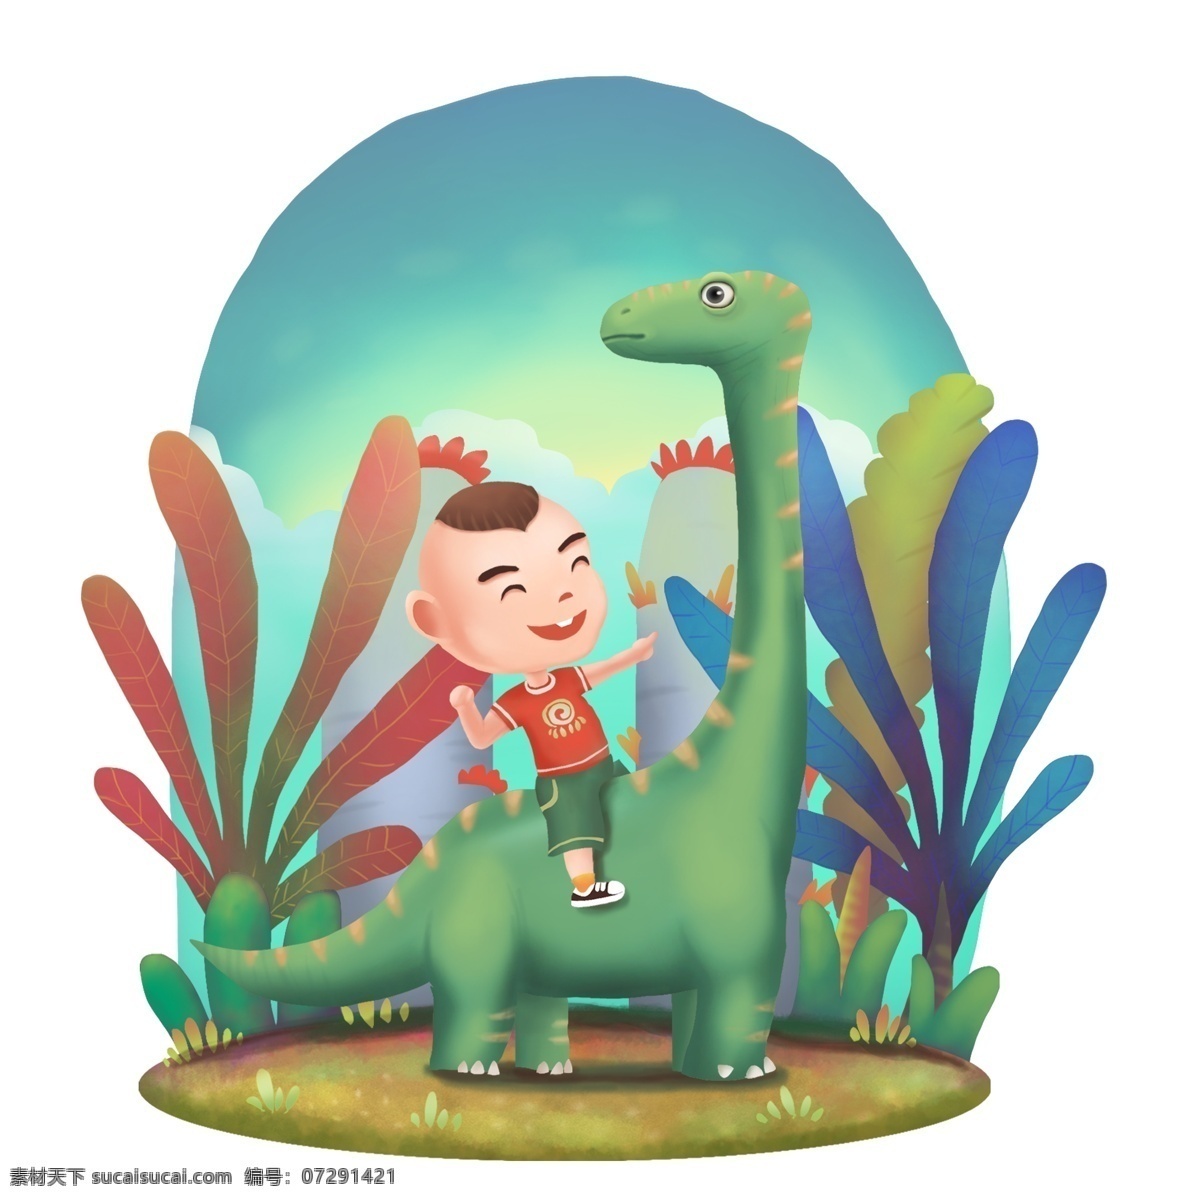 商用 高清 手绘 儿童 恐龙 骑 偶 玩具 乐园 恐龙骑偶玩具 可商用